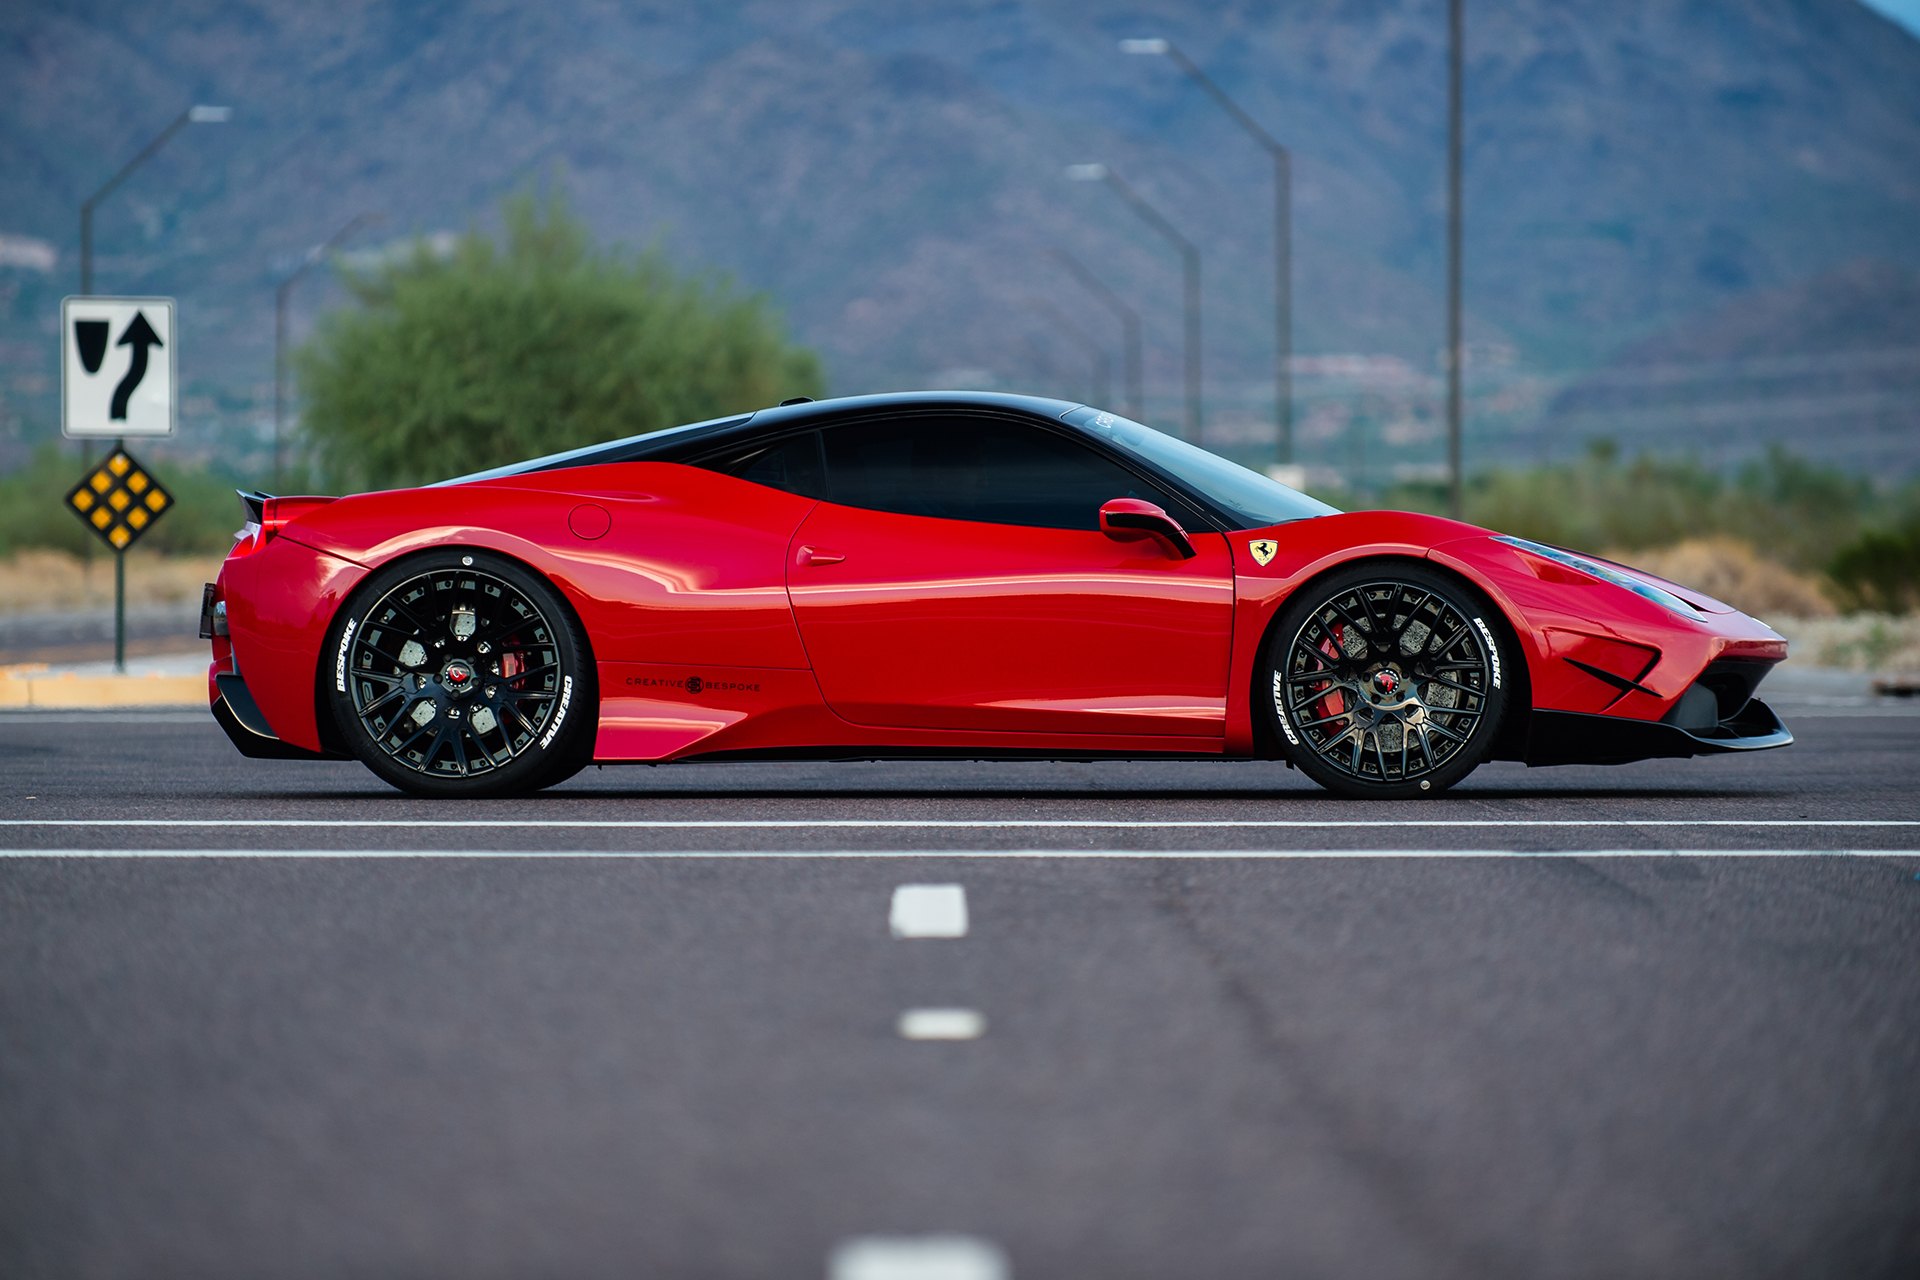 Bespoke Tires on Custom Red Ferrari 458 - Photo by Forgiato